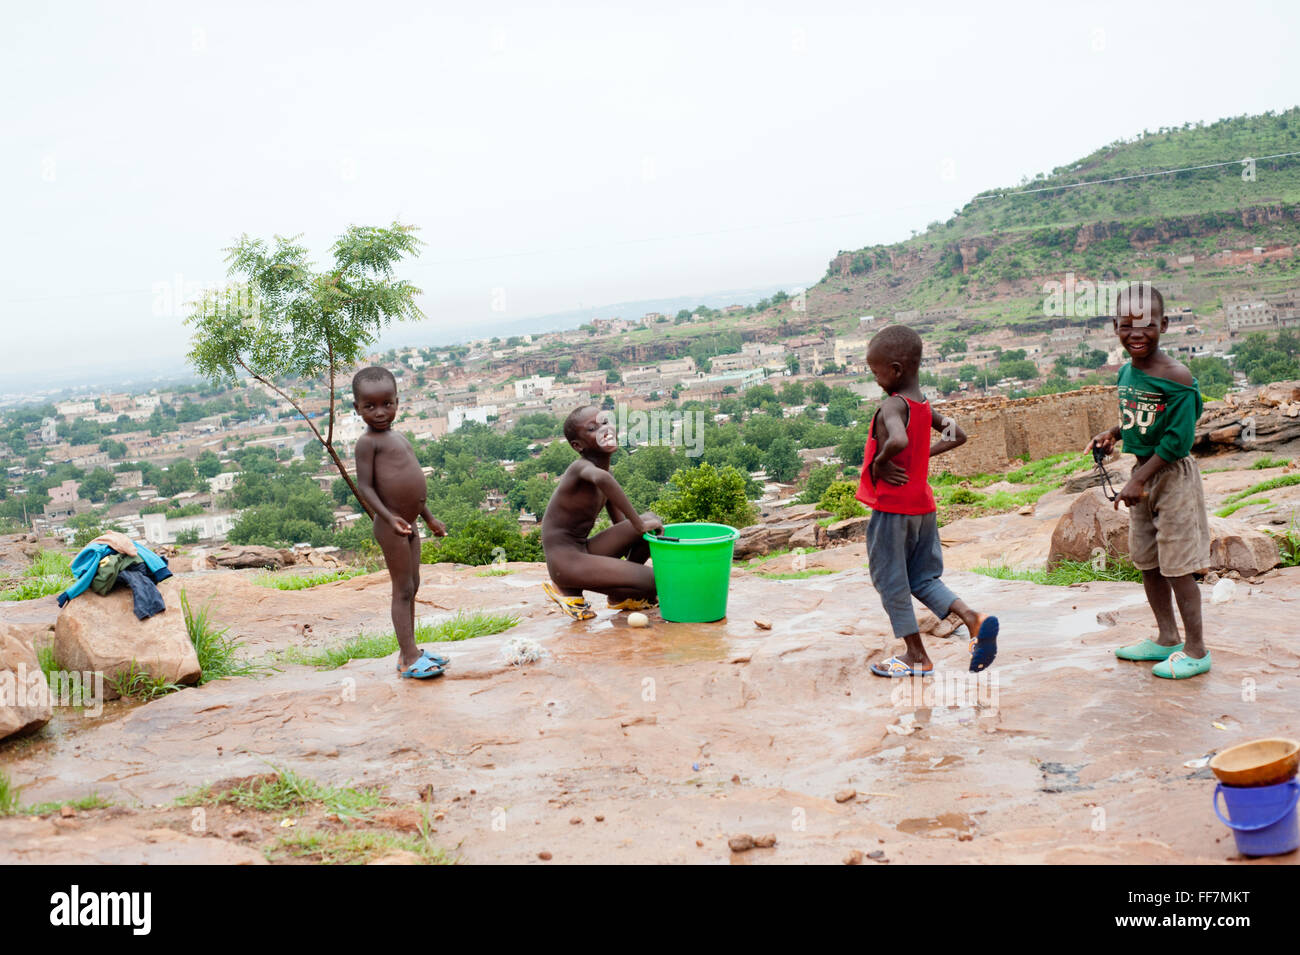 Mali, Afrika - Menschen, die in einem Dorf in der Nähe von Bamako Trinkwasser Stockfoto